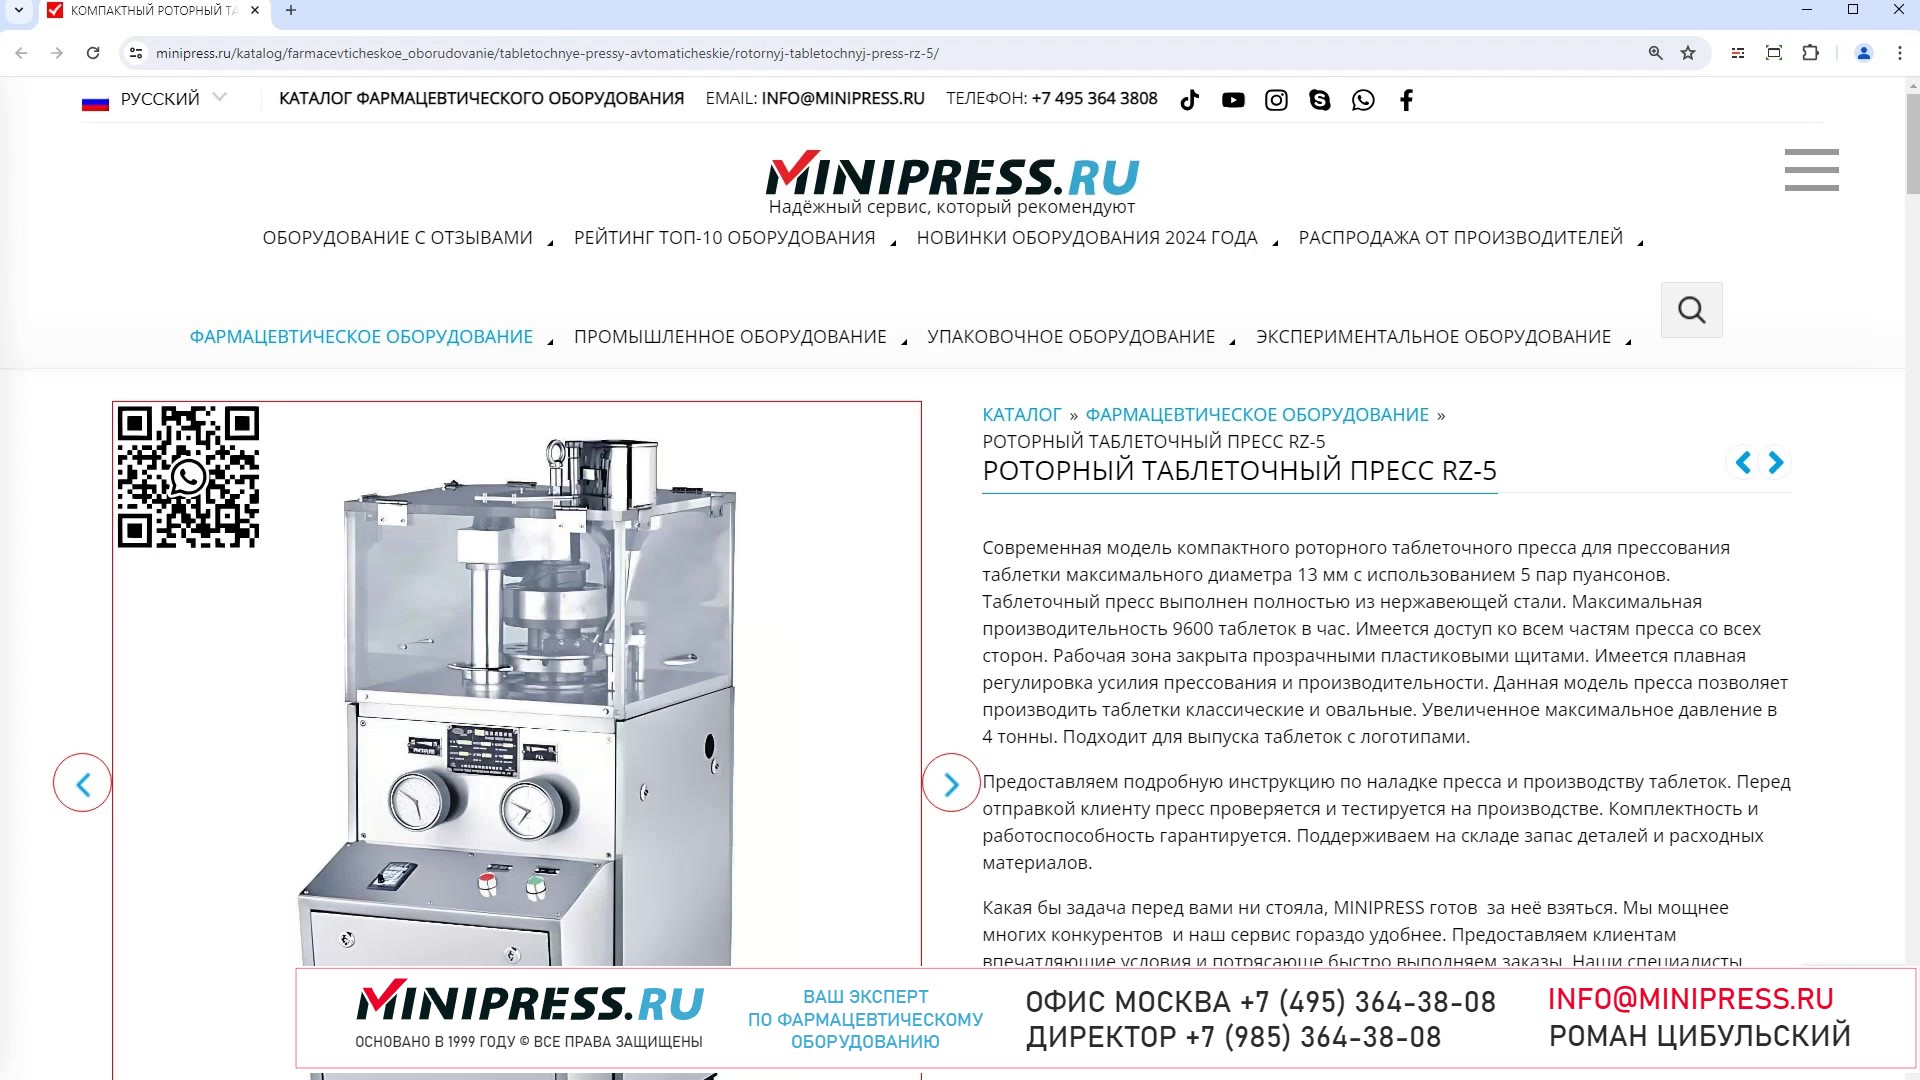 Minipress.ru Роторный таблеточный пресс RZ-5